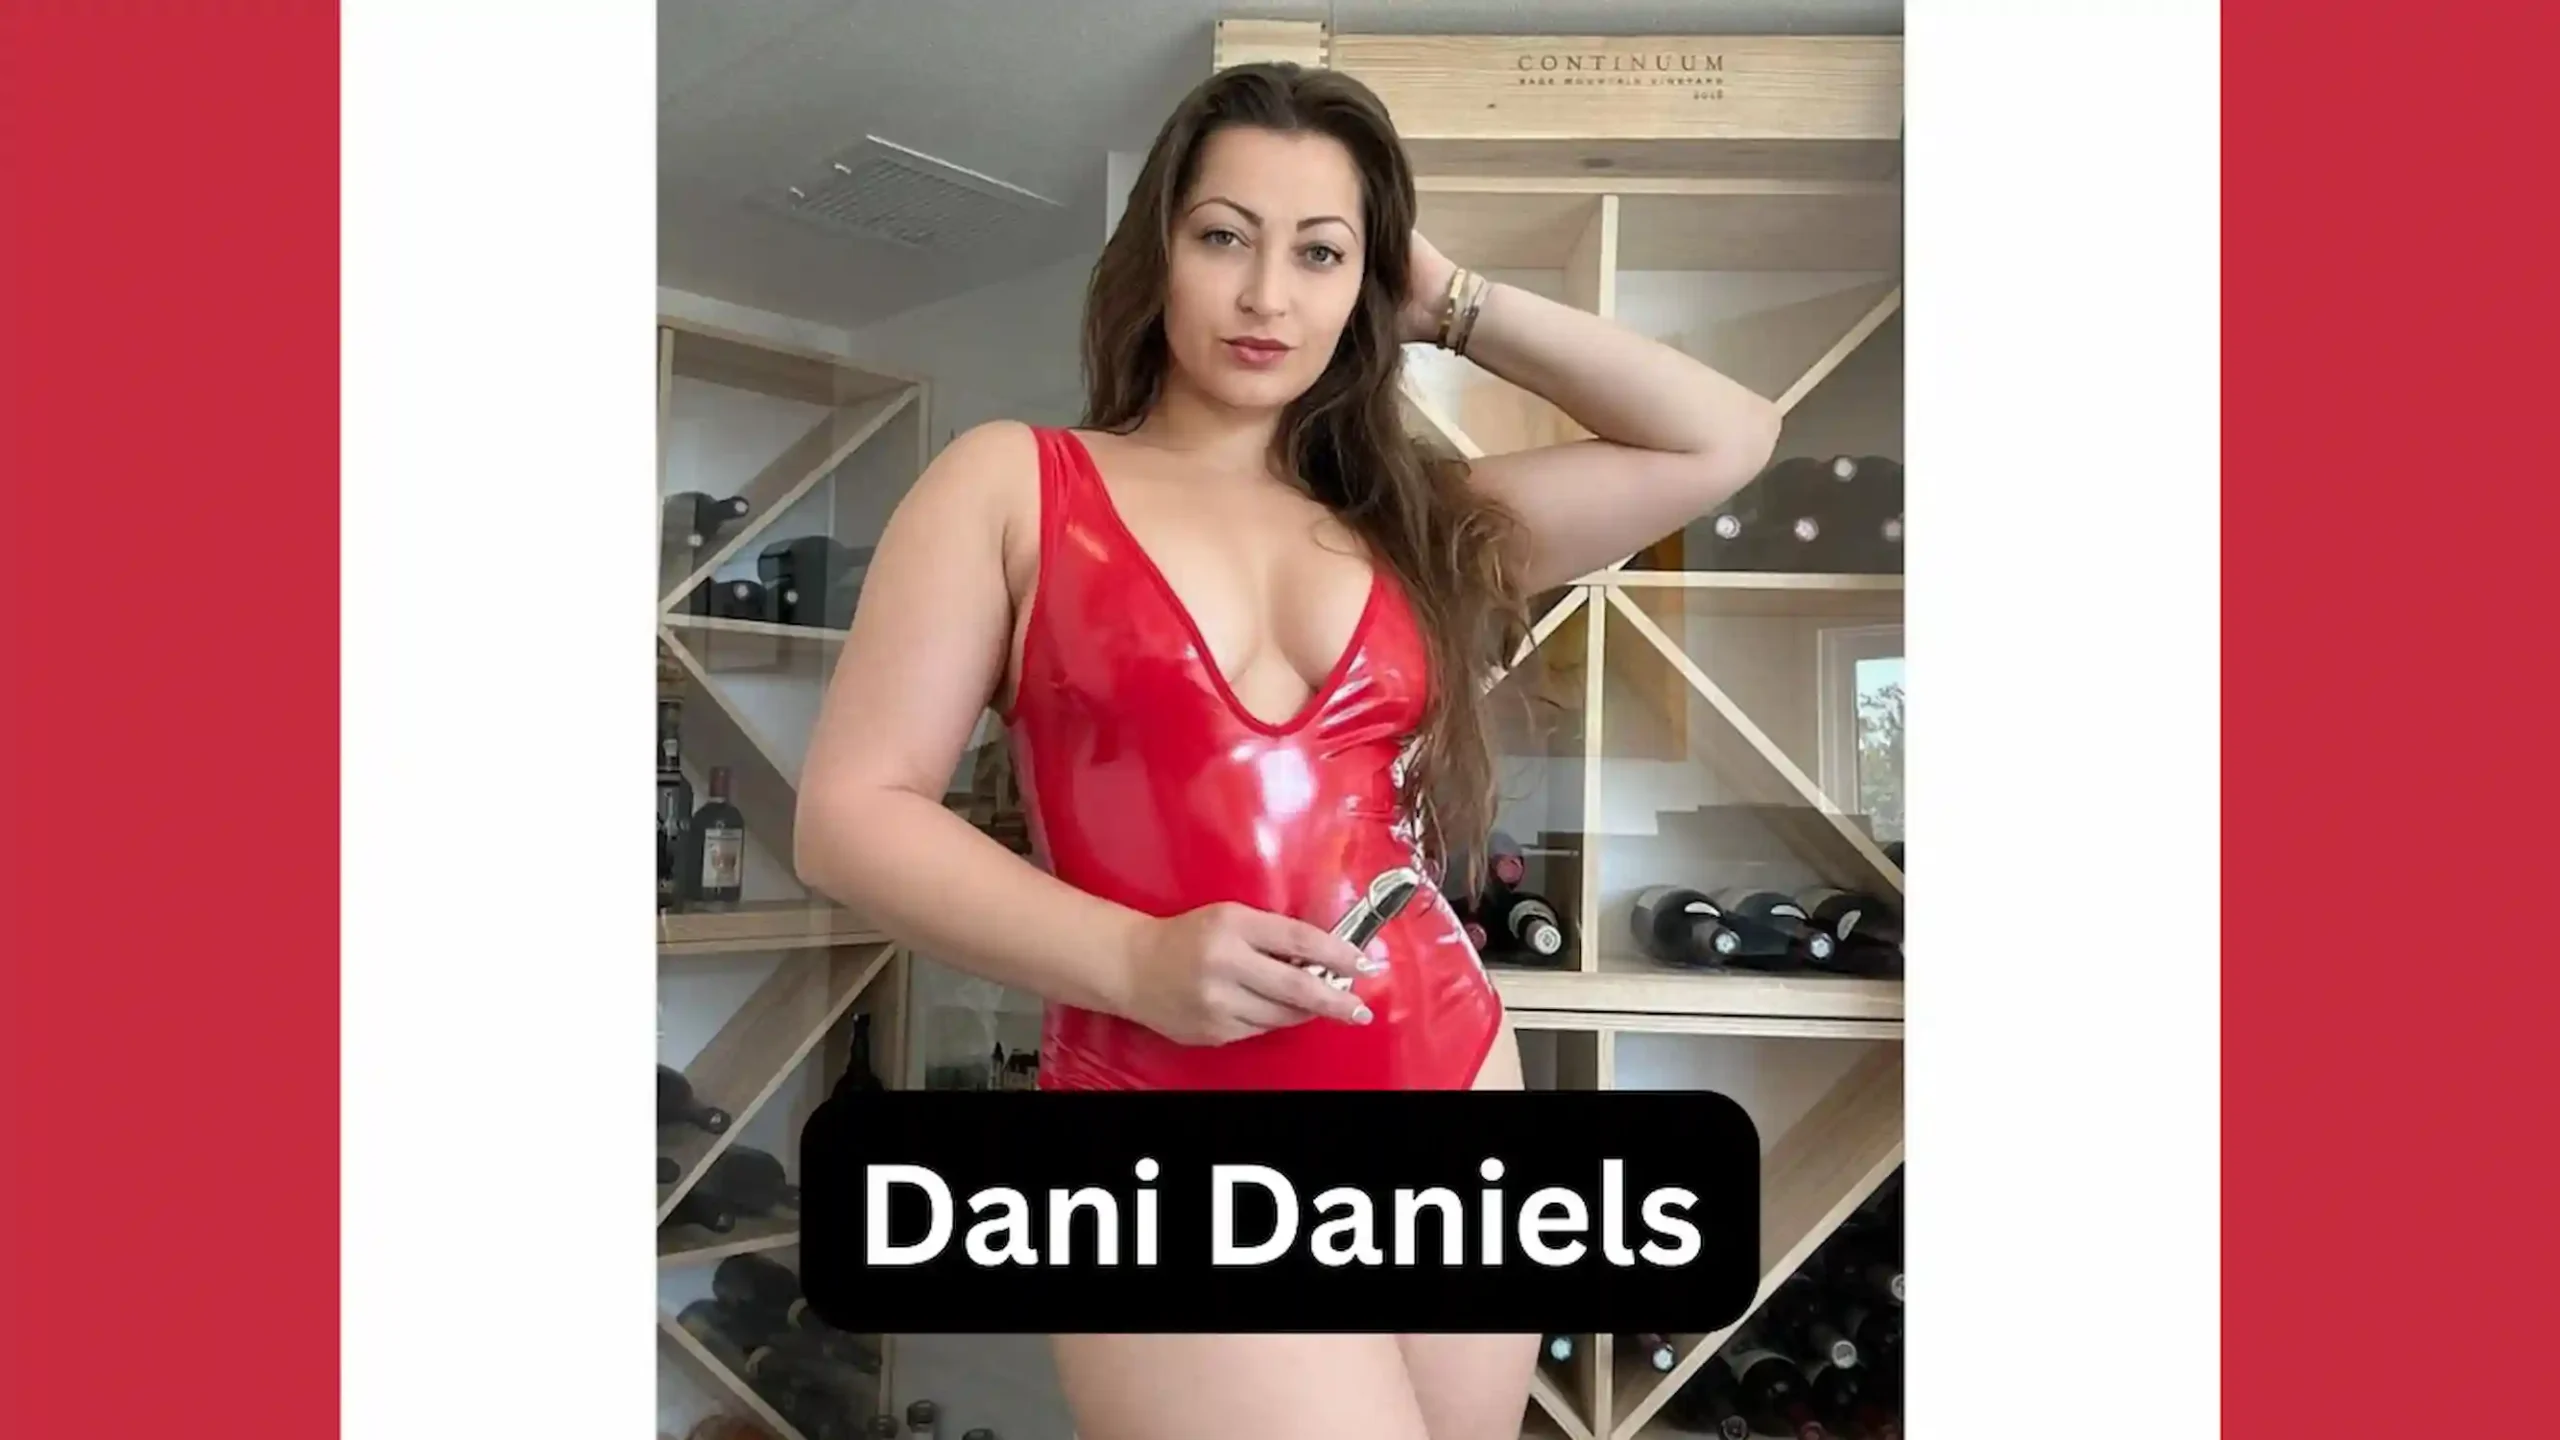 Dani daniel height